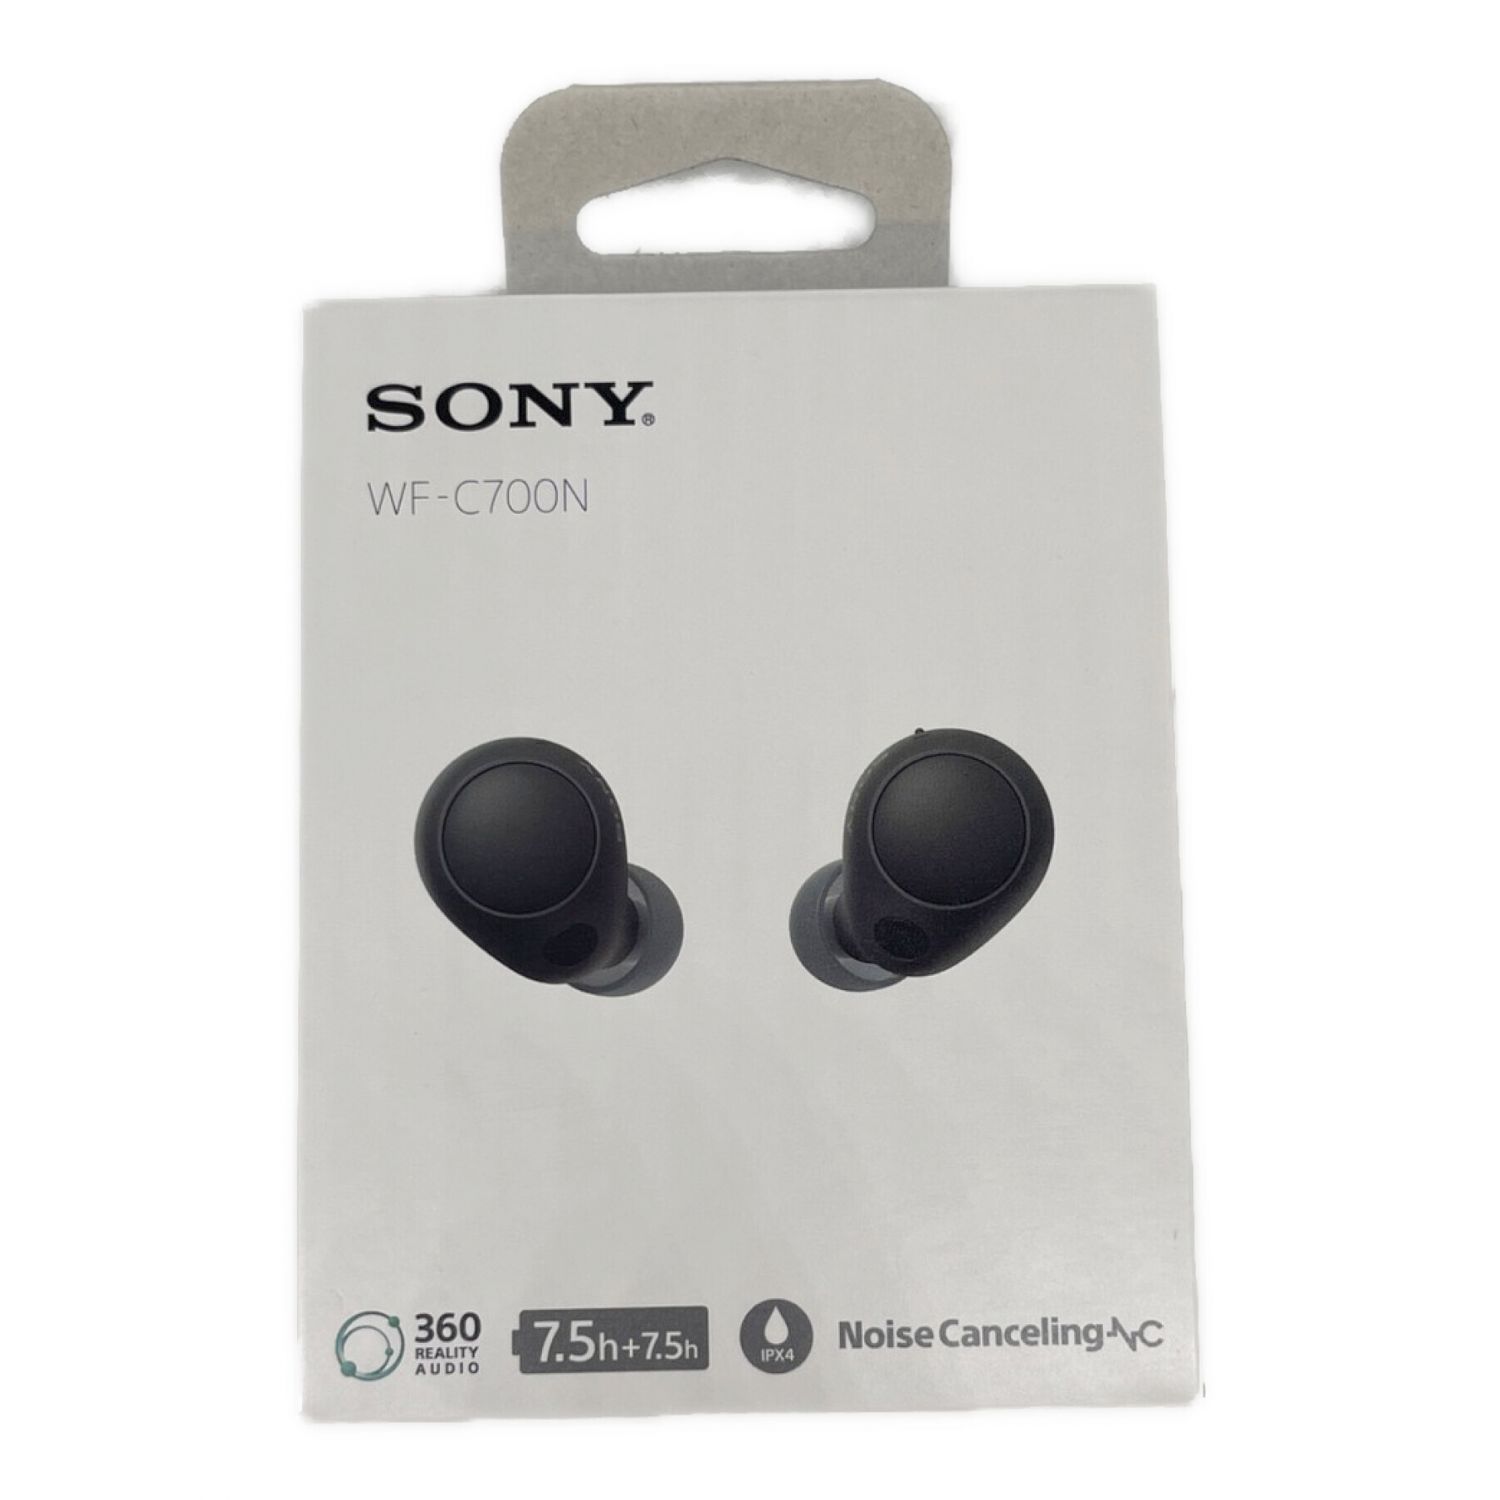 SONY ソニー WF-C700N ホワイト ワイヤレス ノイズキャンセリング